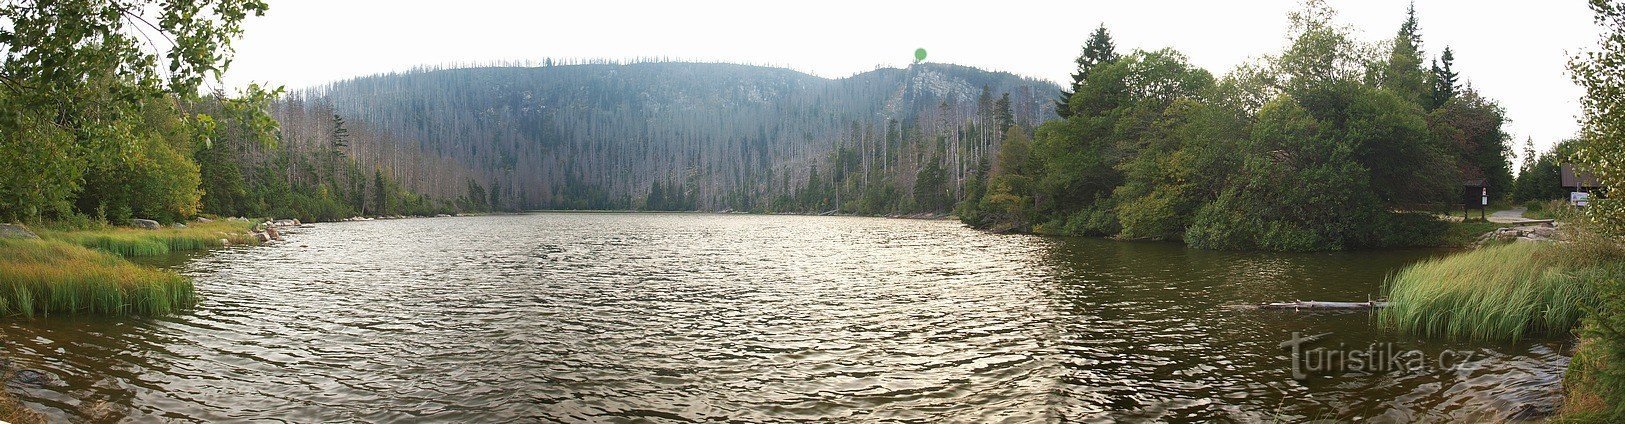 Plešné jezero zabrané z jeho hráze. Zelený bod ukazuje vyhlídku s kamenným obeli